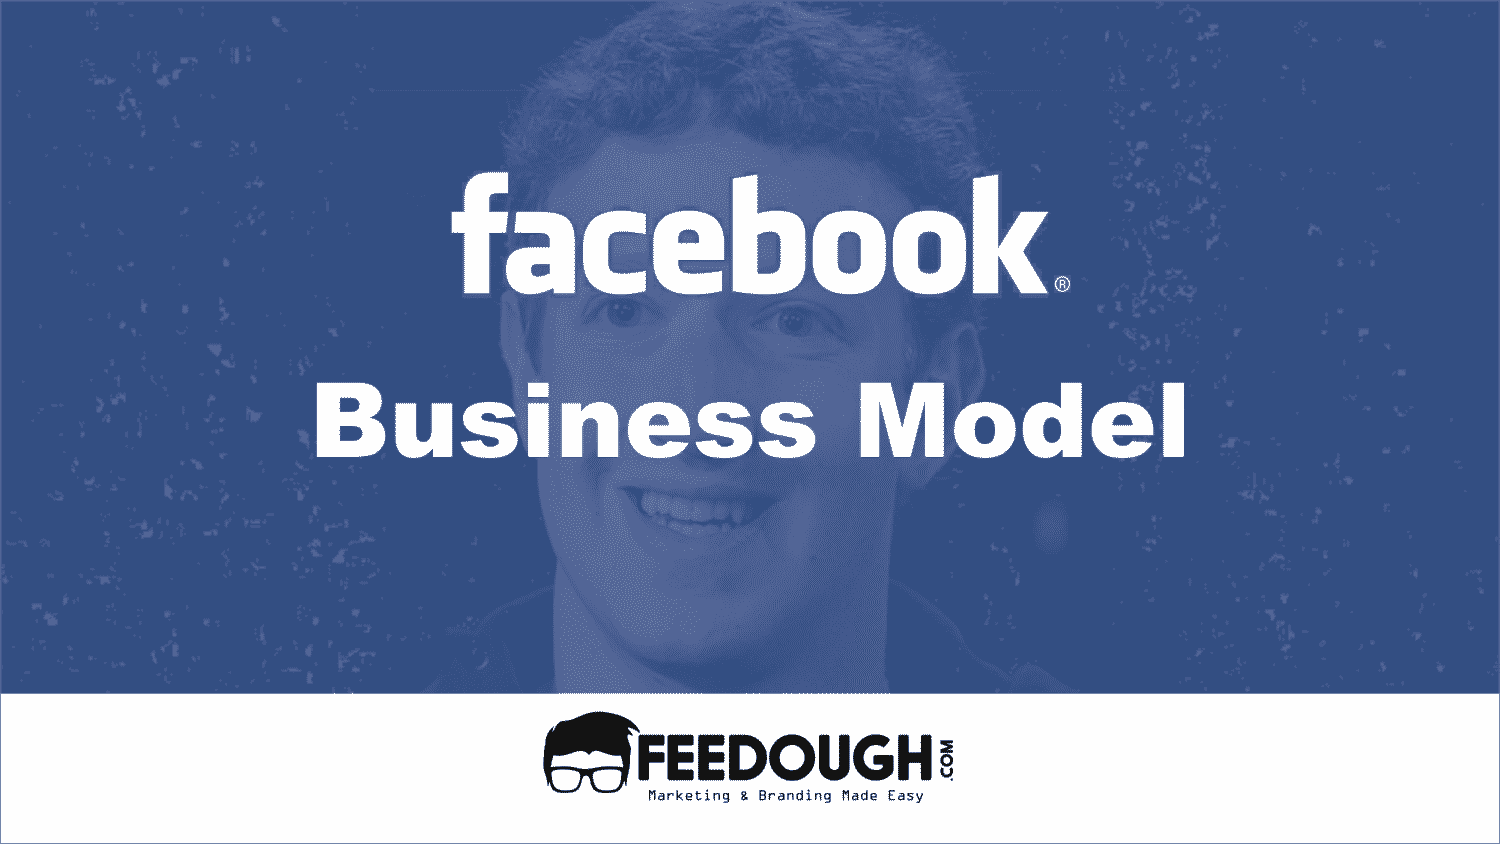 Facebook Business Model | How Does Facebook Make Money?